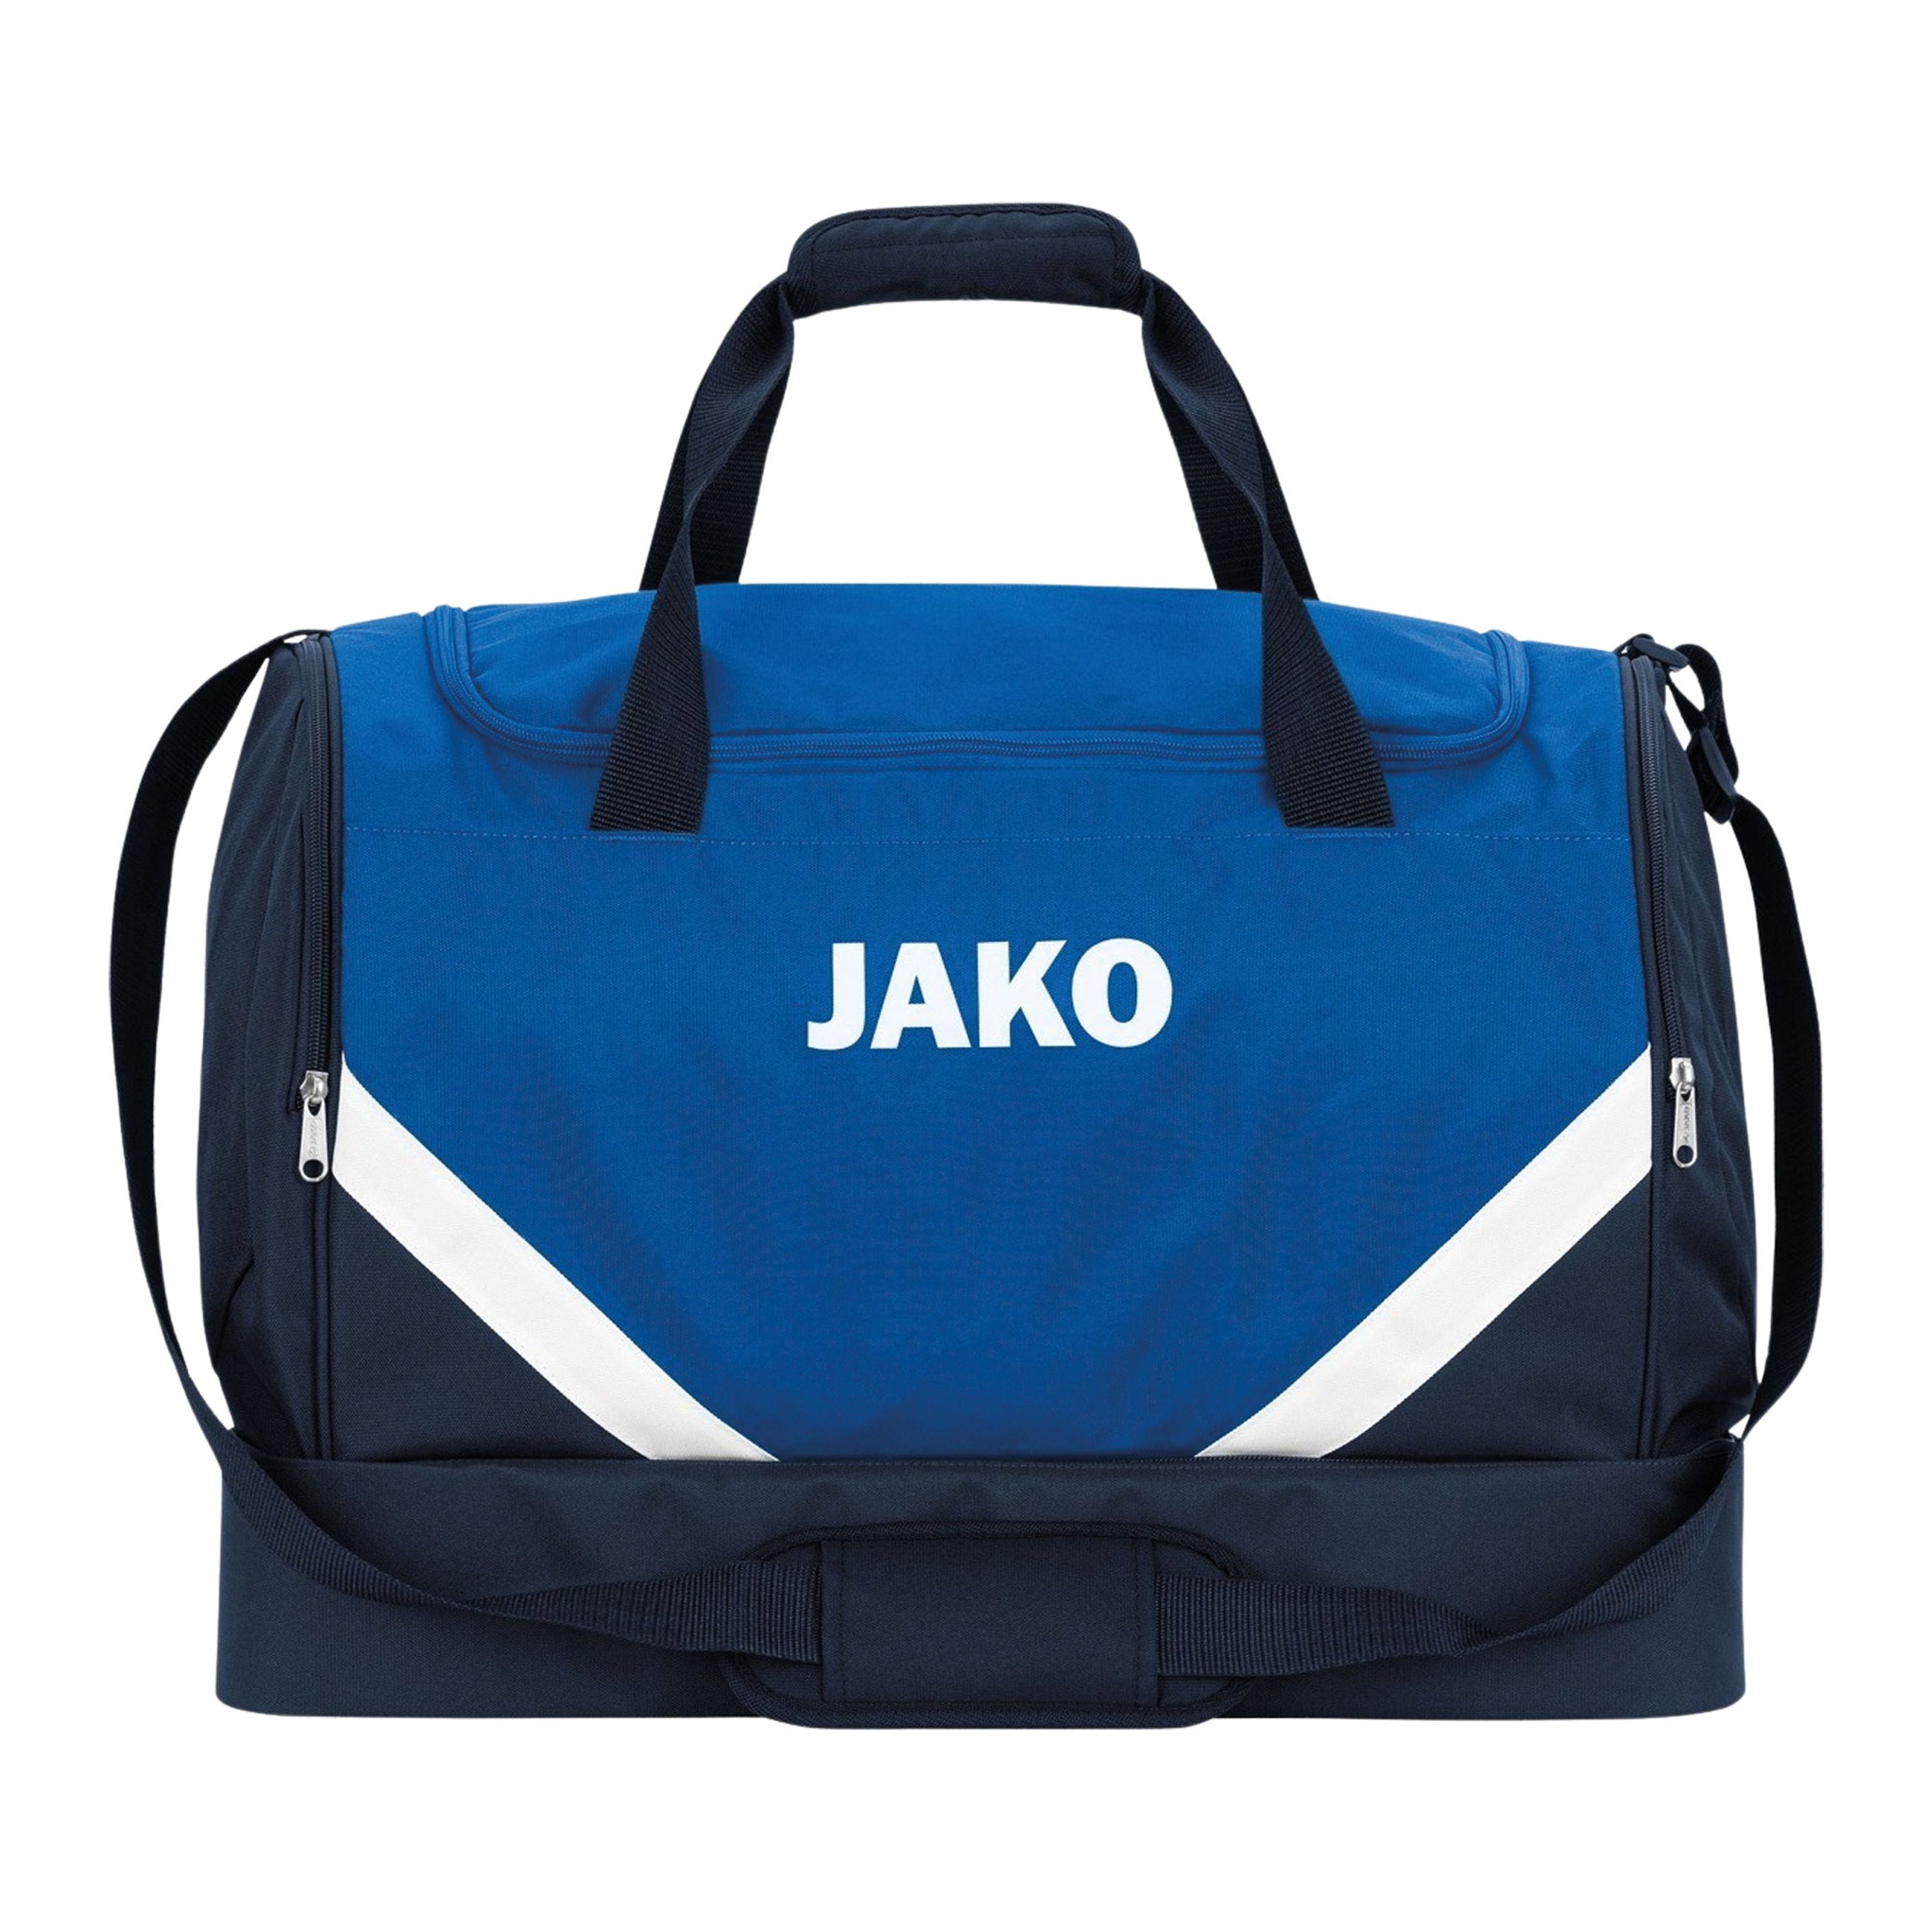 JAKO Iconic Sporttasche mit Bodenfach 403 - royal/marine L (85 Liter)